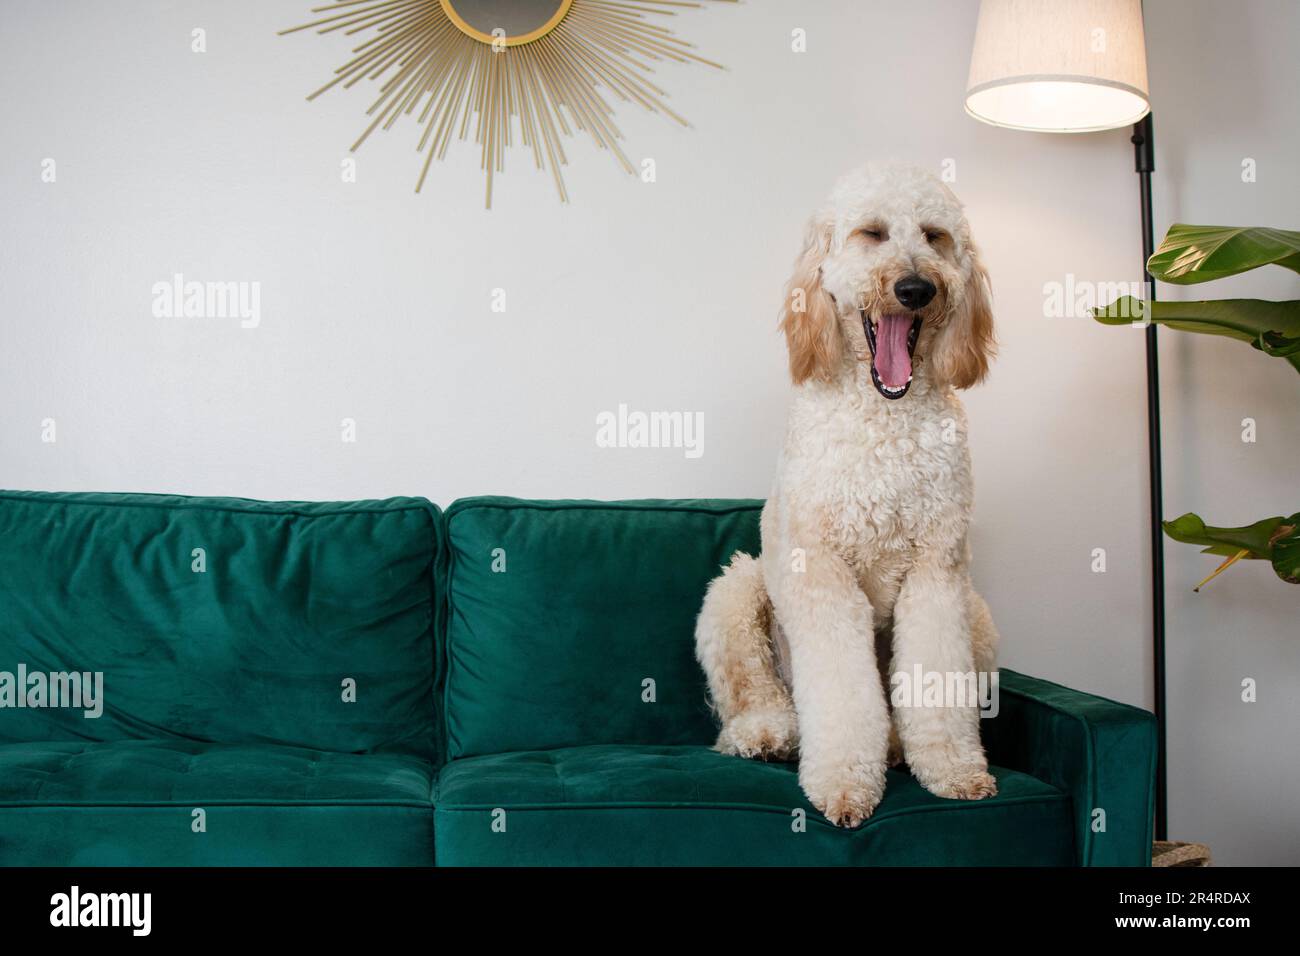 Wunderschöner riesiger Hund Goldendoodle, der auf einer grünen Couch sitzt und gähnt. Gähnender Hund Stockfoto